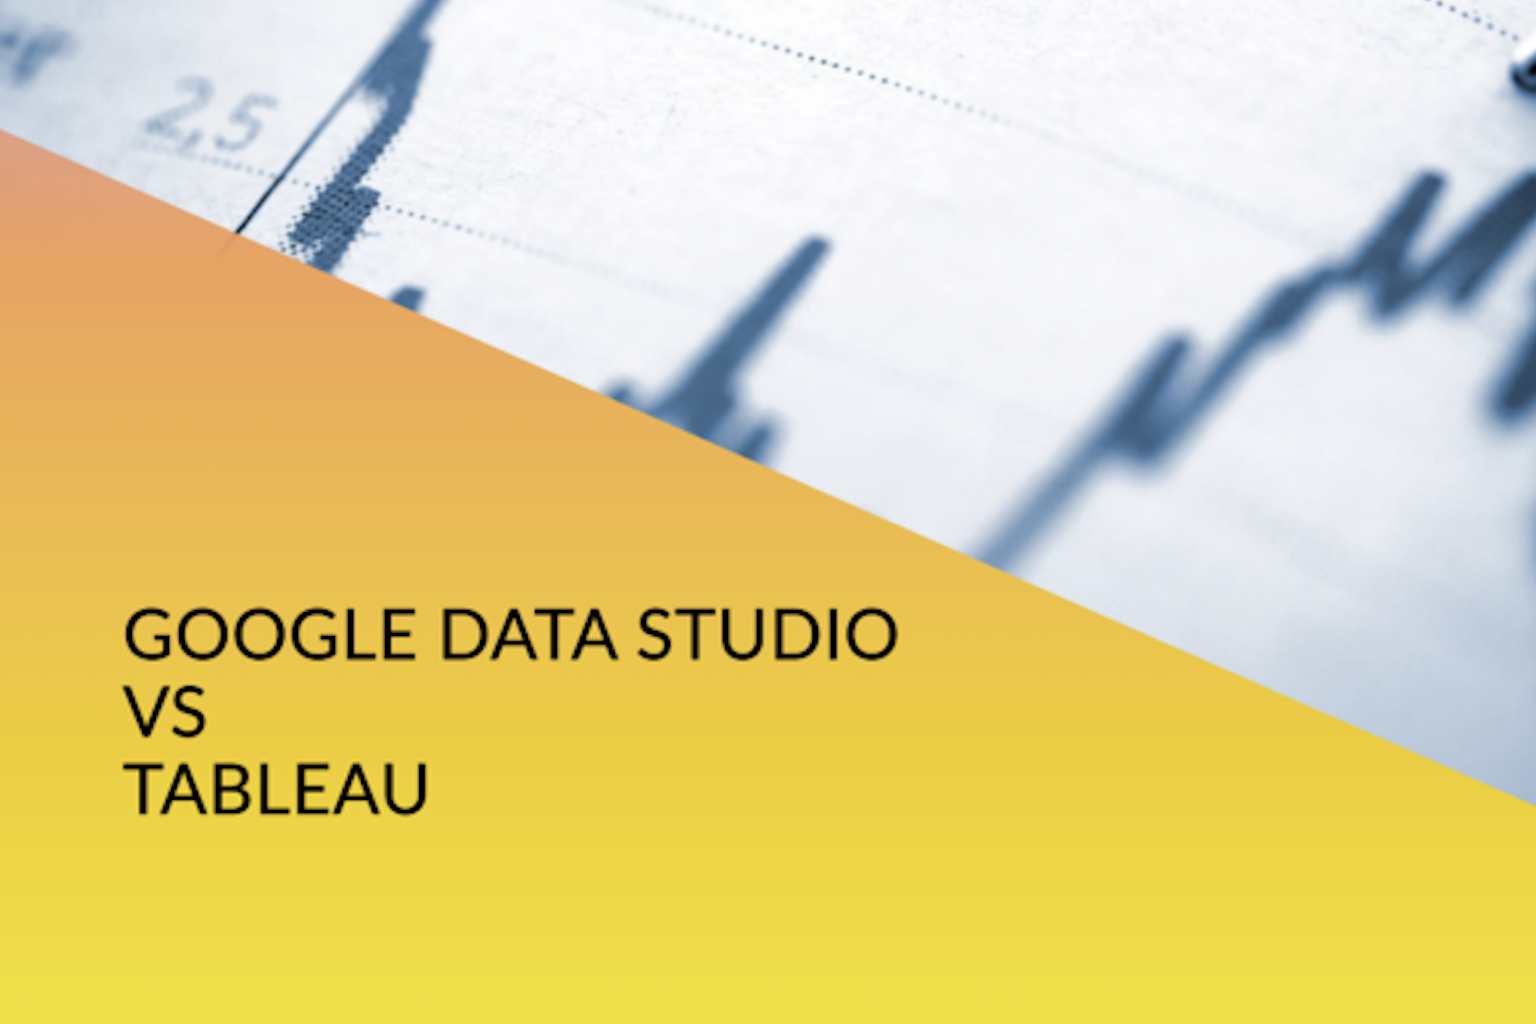 Découvrez la comparaison ultime entre Google Data Studio et Tableau. Découvrez quel outil convient parfaitement à vos besoins en matière de visualisation des données. Cliquez pour en savoir plus !